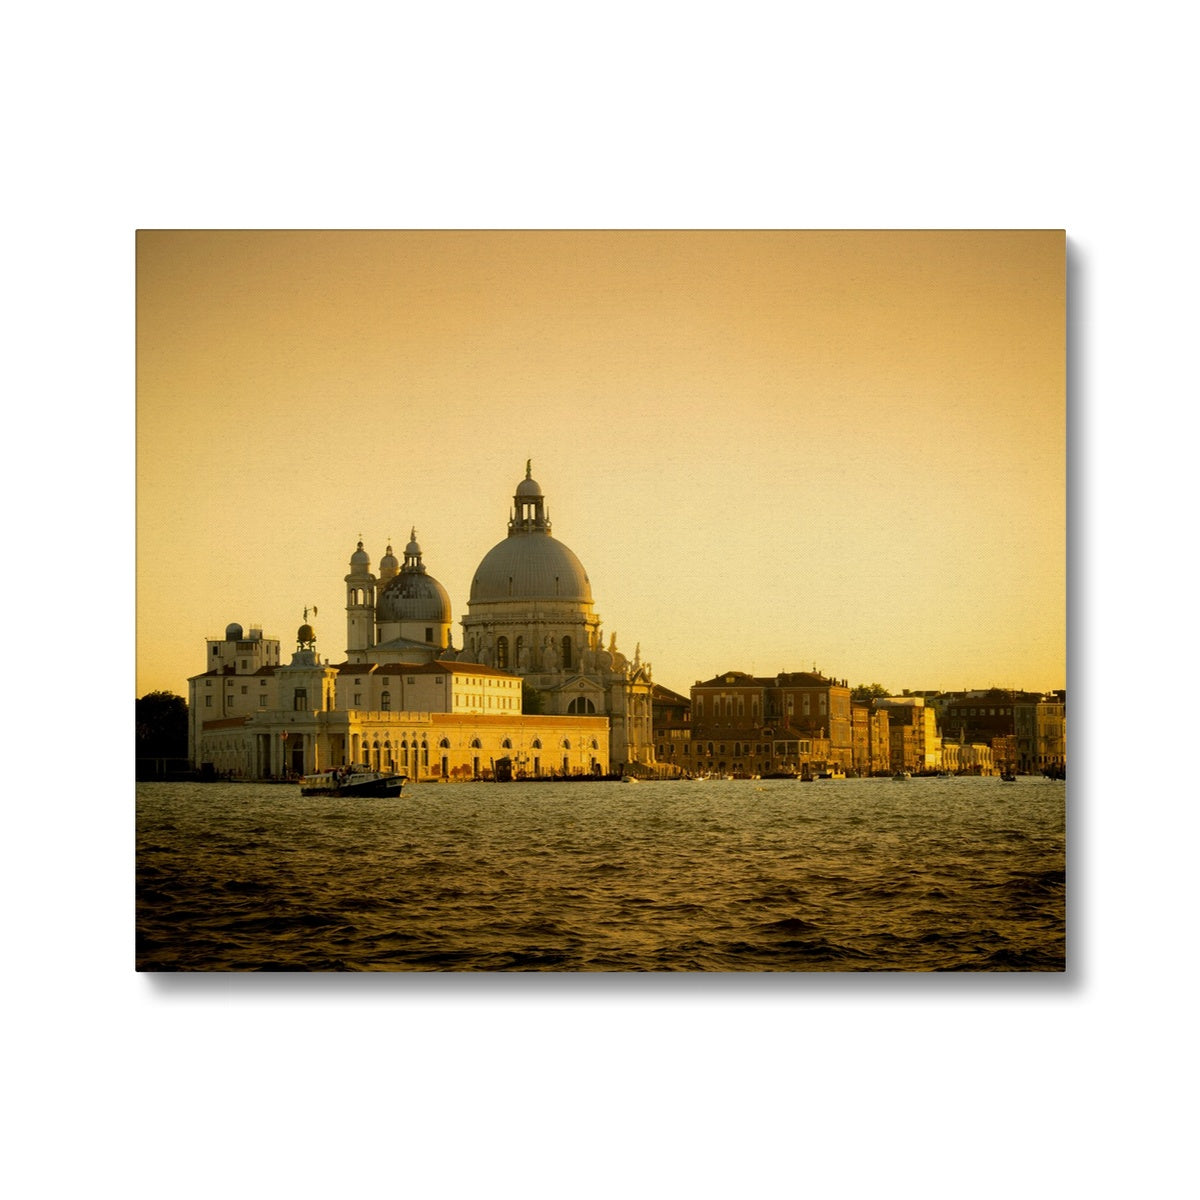 Venice sunset. Punta della Dogana and the Church of Santa Maria della Salute. . Canvas